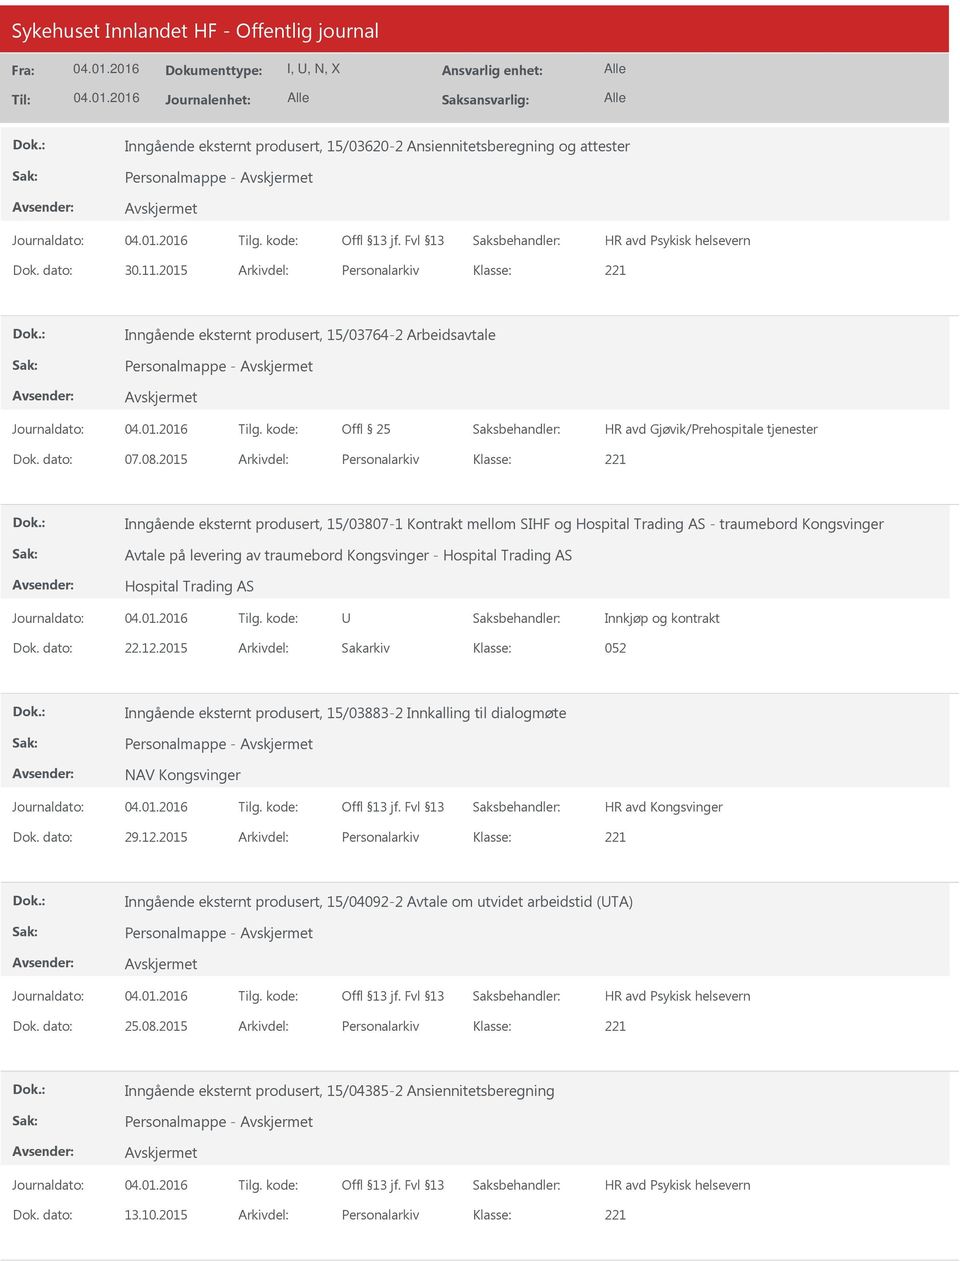 2015 Arkivdel: Personalarkiv Inngående eksternt produsert, 15/03807-1 Kontrakt mellom SIHF og Hospital Trading AS - traumebord Kongsvinger Avtale på levering av traumebord Kongsvinger - Hospital